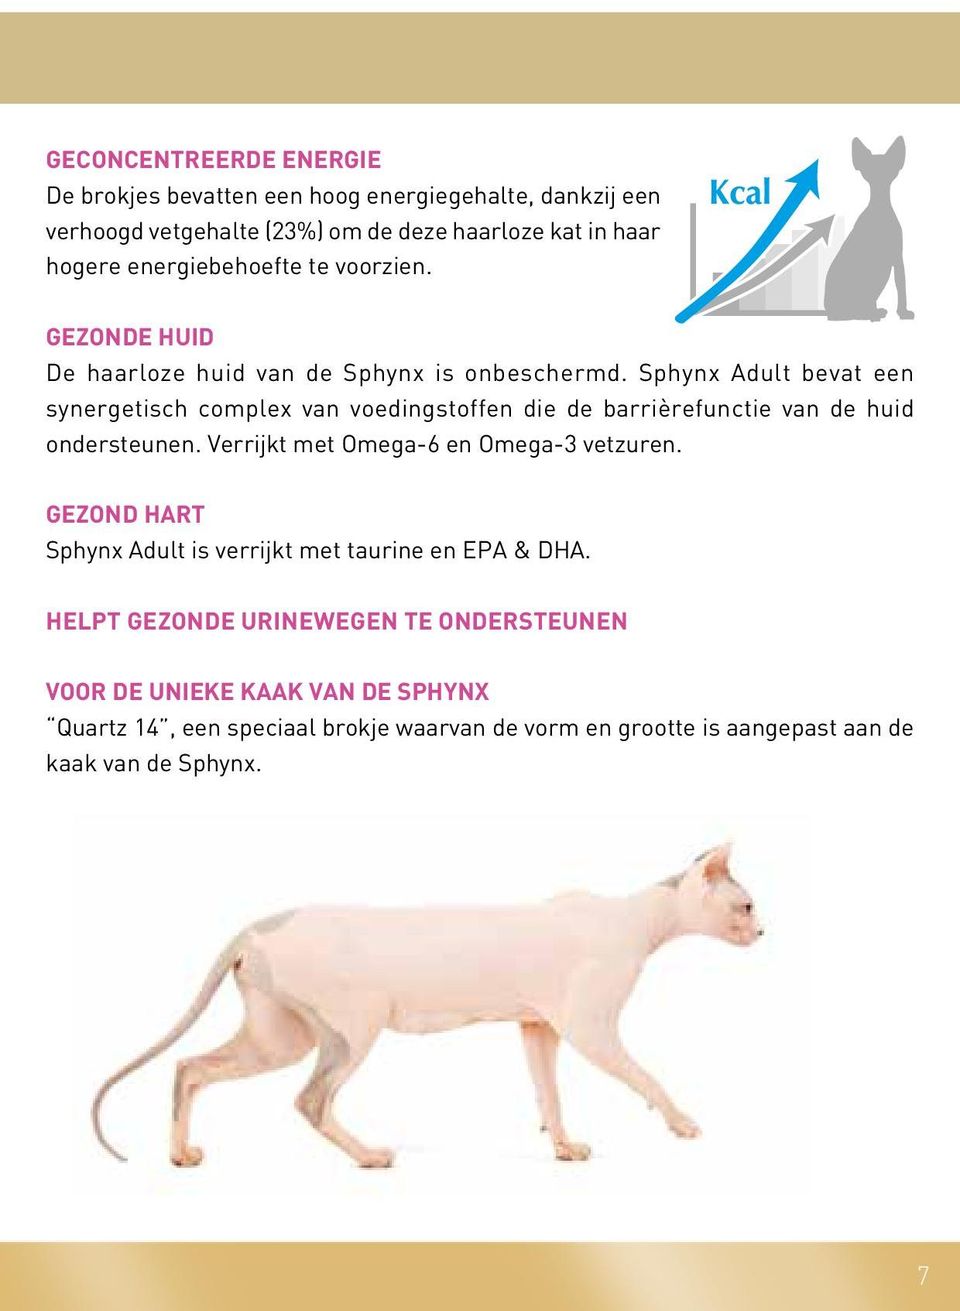 Sphynx Adult bevat een synergetisch complex van voedingstoffen die de barrièrefunctie van de huid ondersteunen. Verrijkt met Omega-6 en Omega-3 vetzuren.